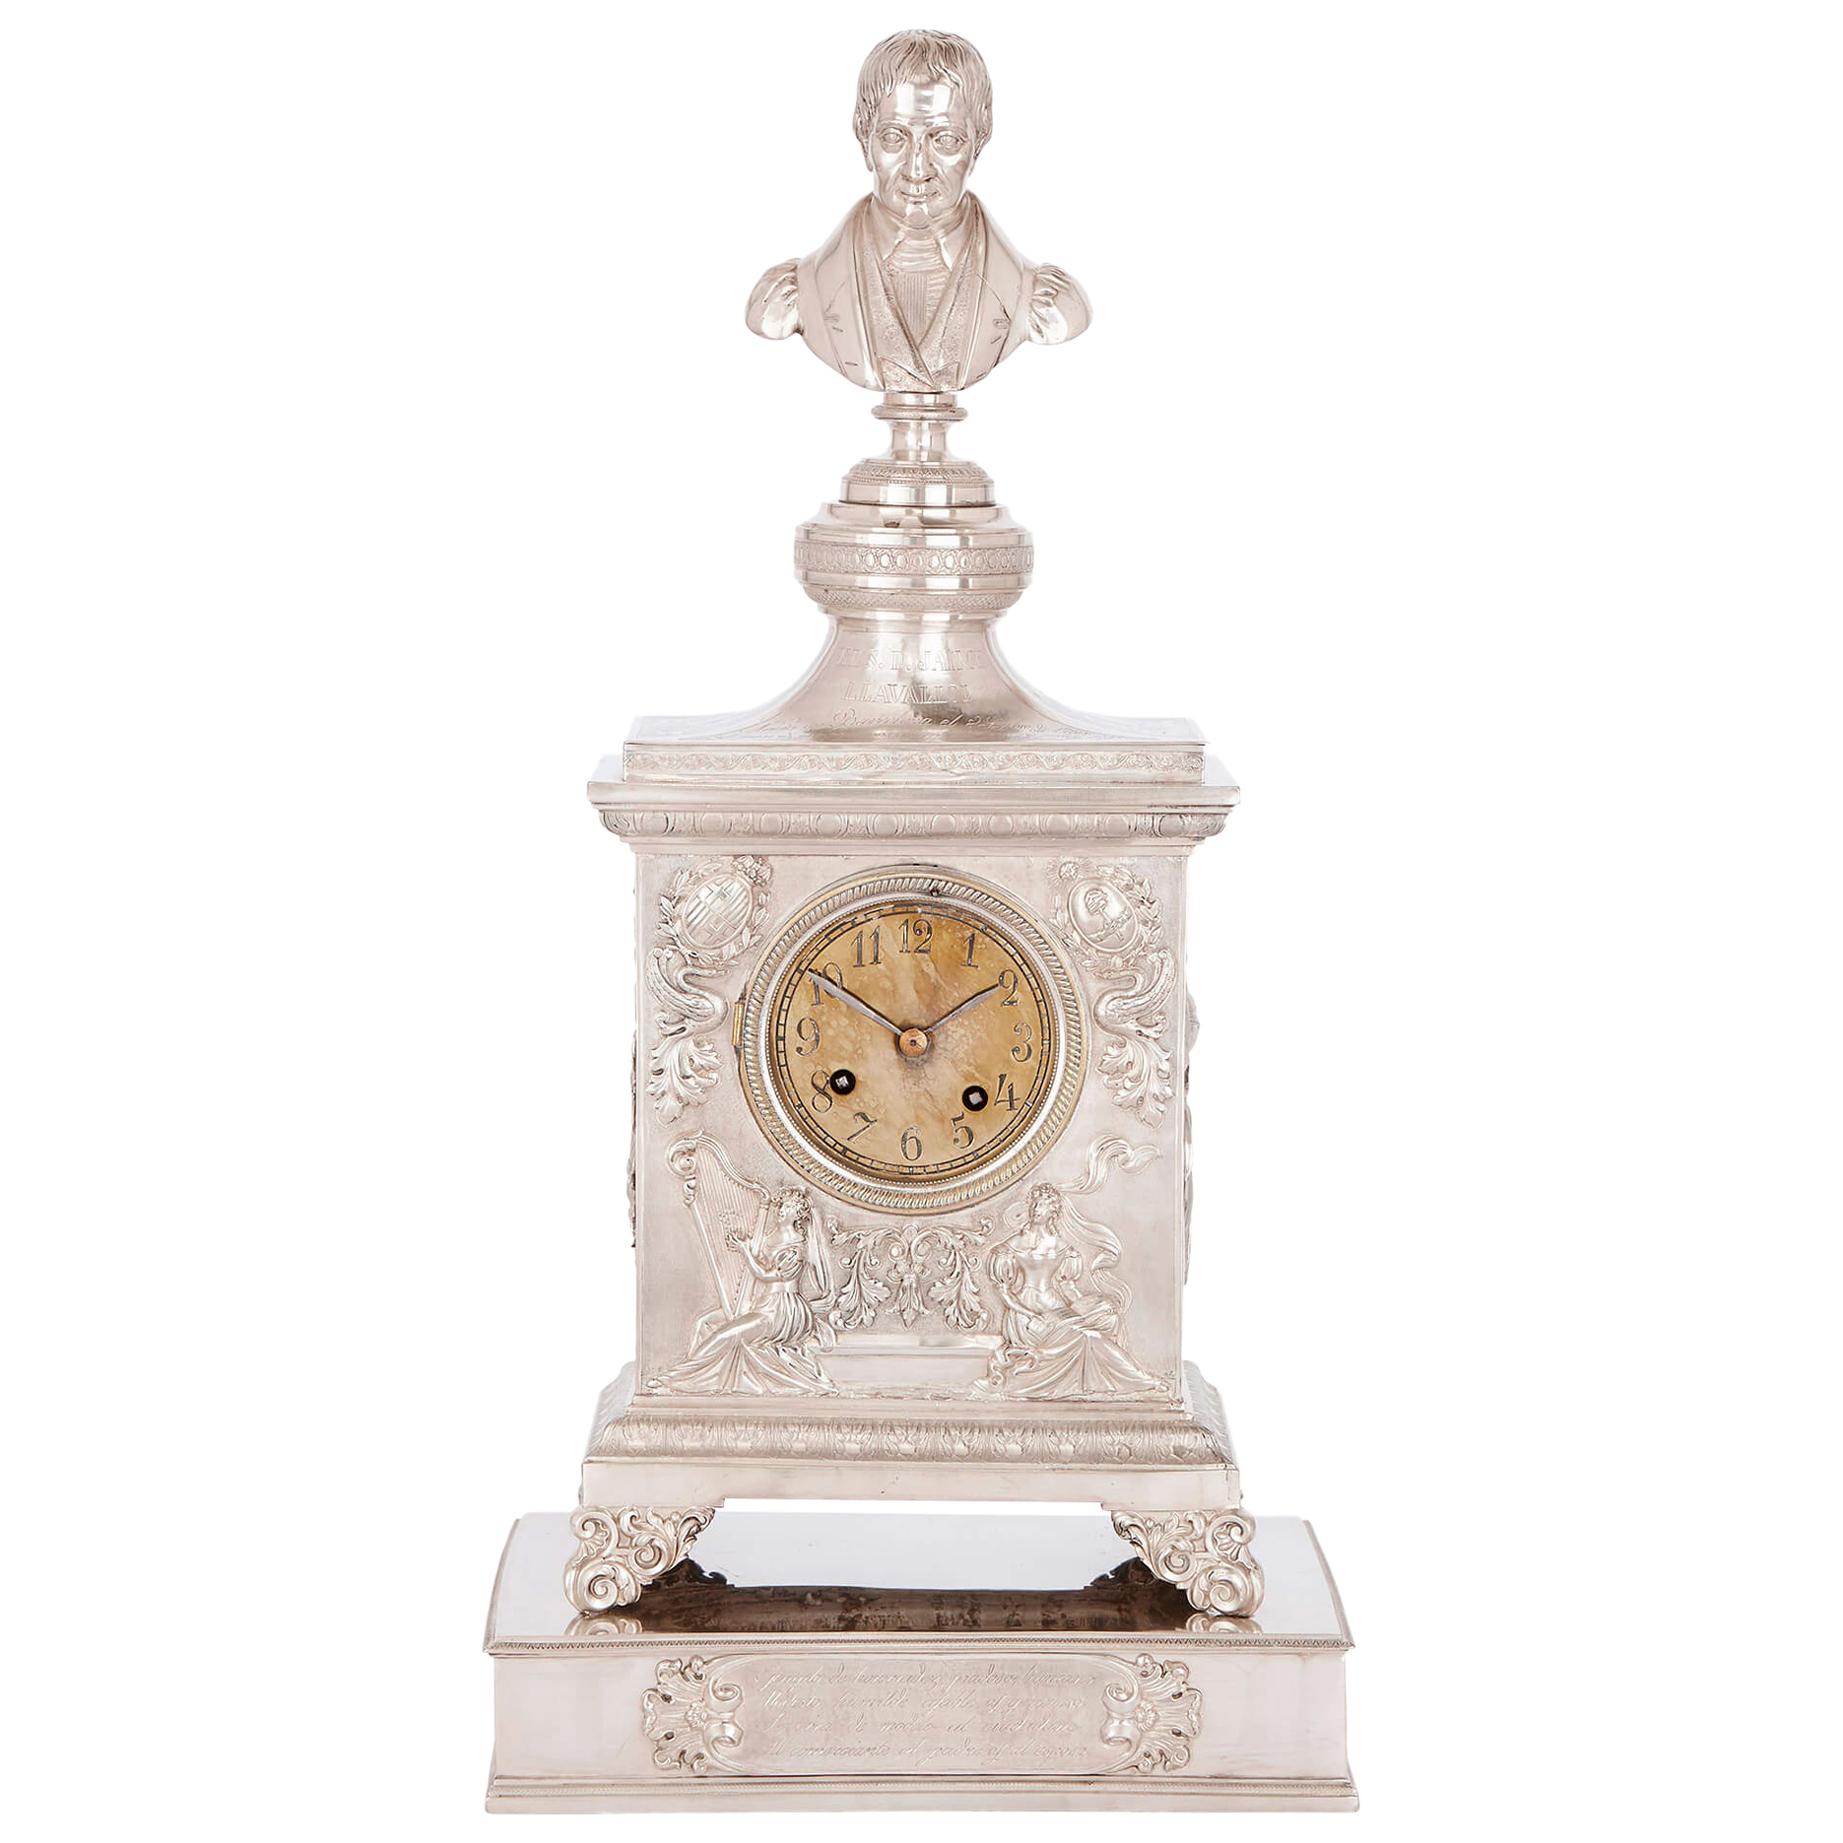 Antique Solid Silver Inscribed Mantel Clock